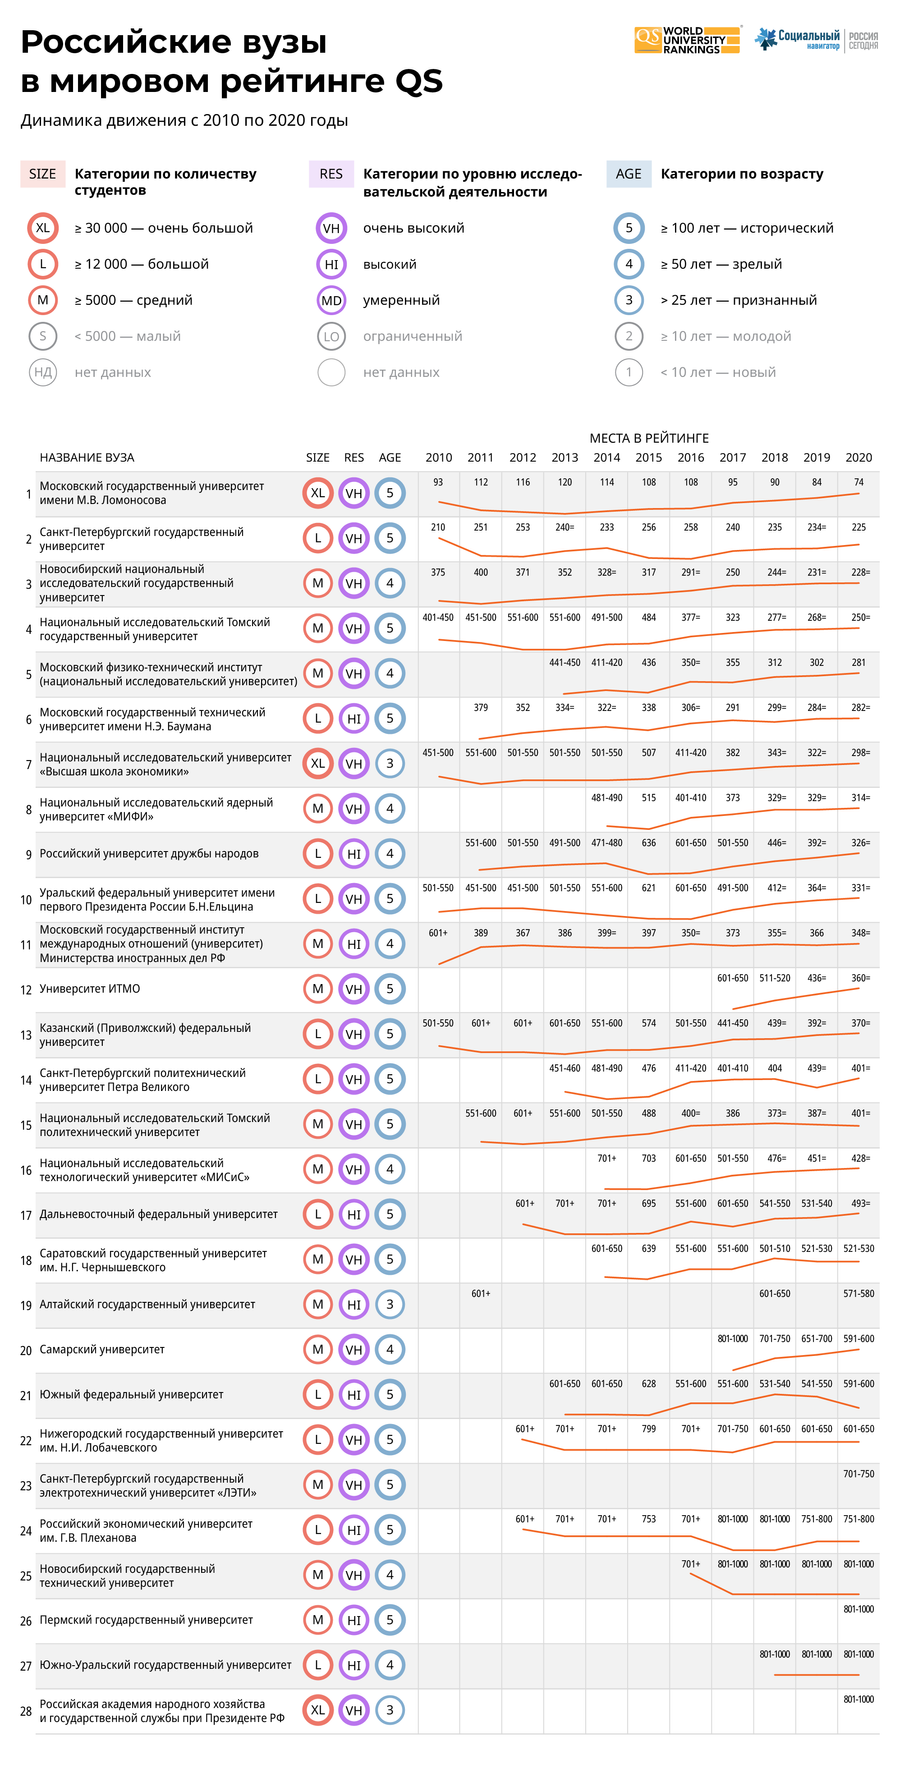 Российские вузы в мировом рейтинге QS - 2020